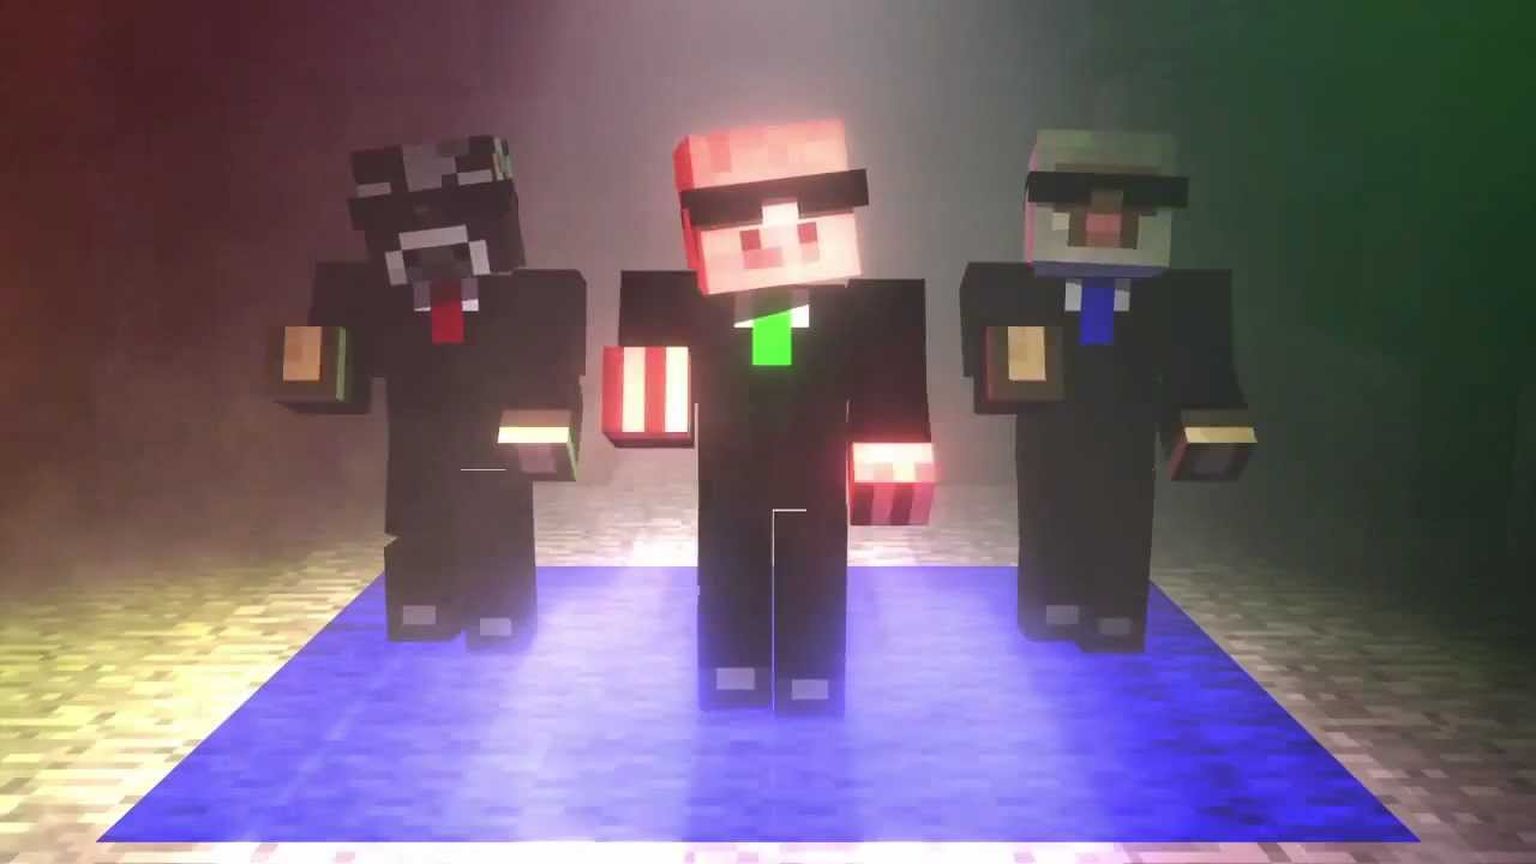 Möödunud nädalavahetusel toimus Minecrafti virtuaalmaailmas tantsumuusikafestival Fire Festival 2019.